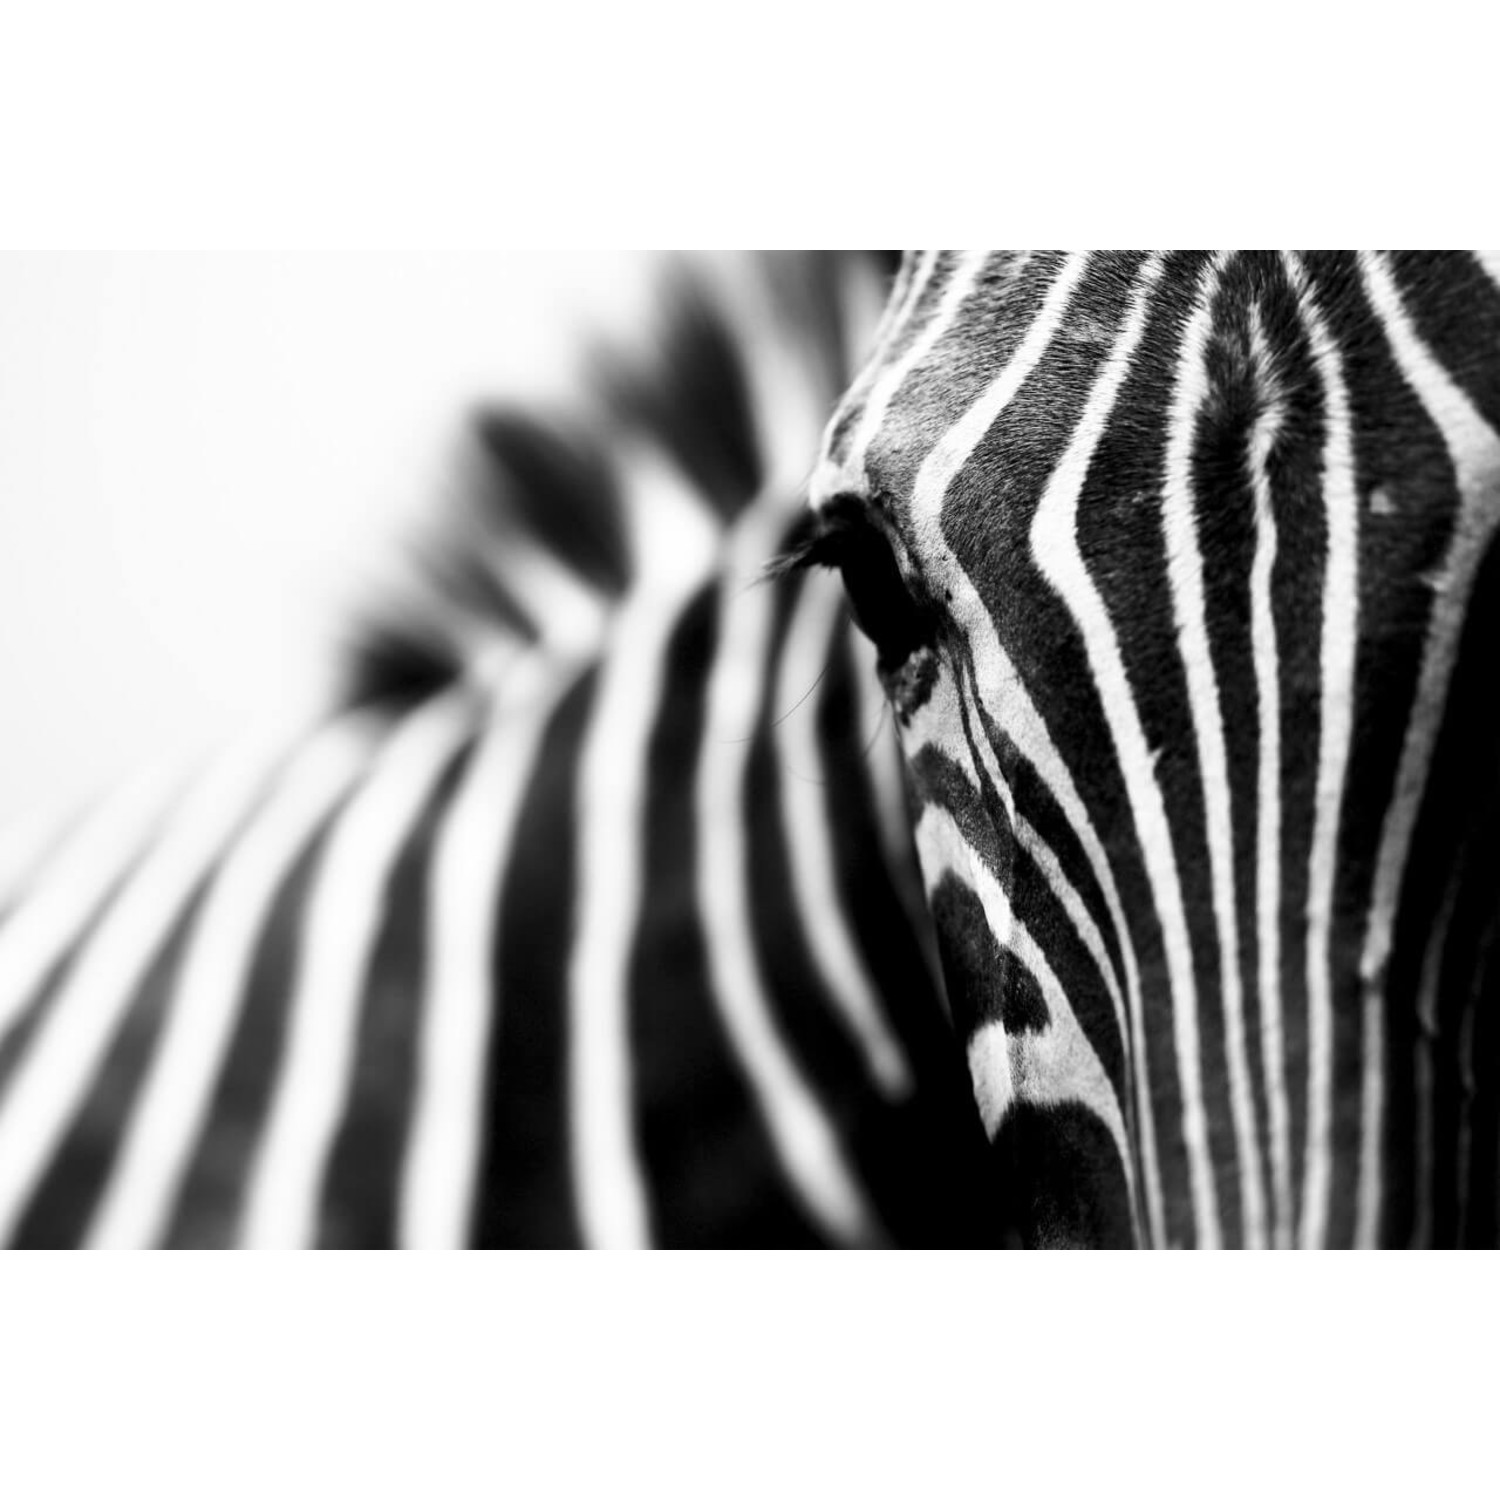 Rendezvous Laat je zien Milieuactivist Close-up zwart-wit strepenpatroon van de zebra • 120 x 80 cm •  Glazenschilderijen.nl